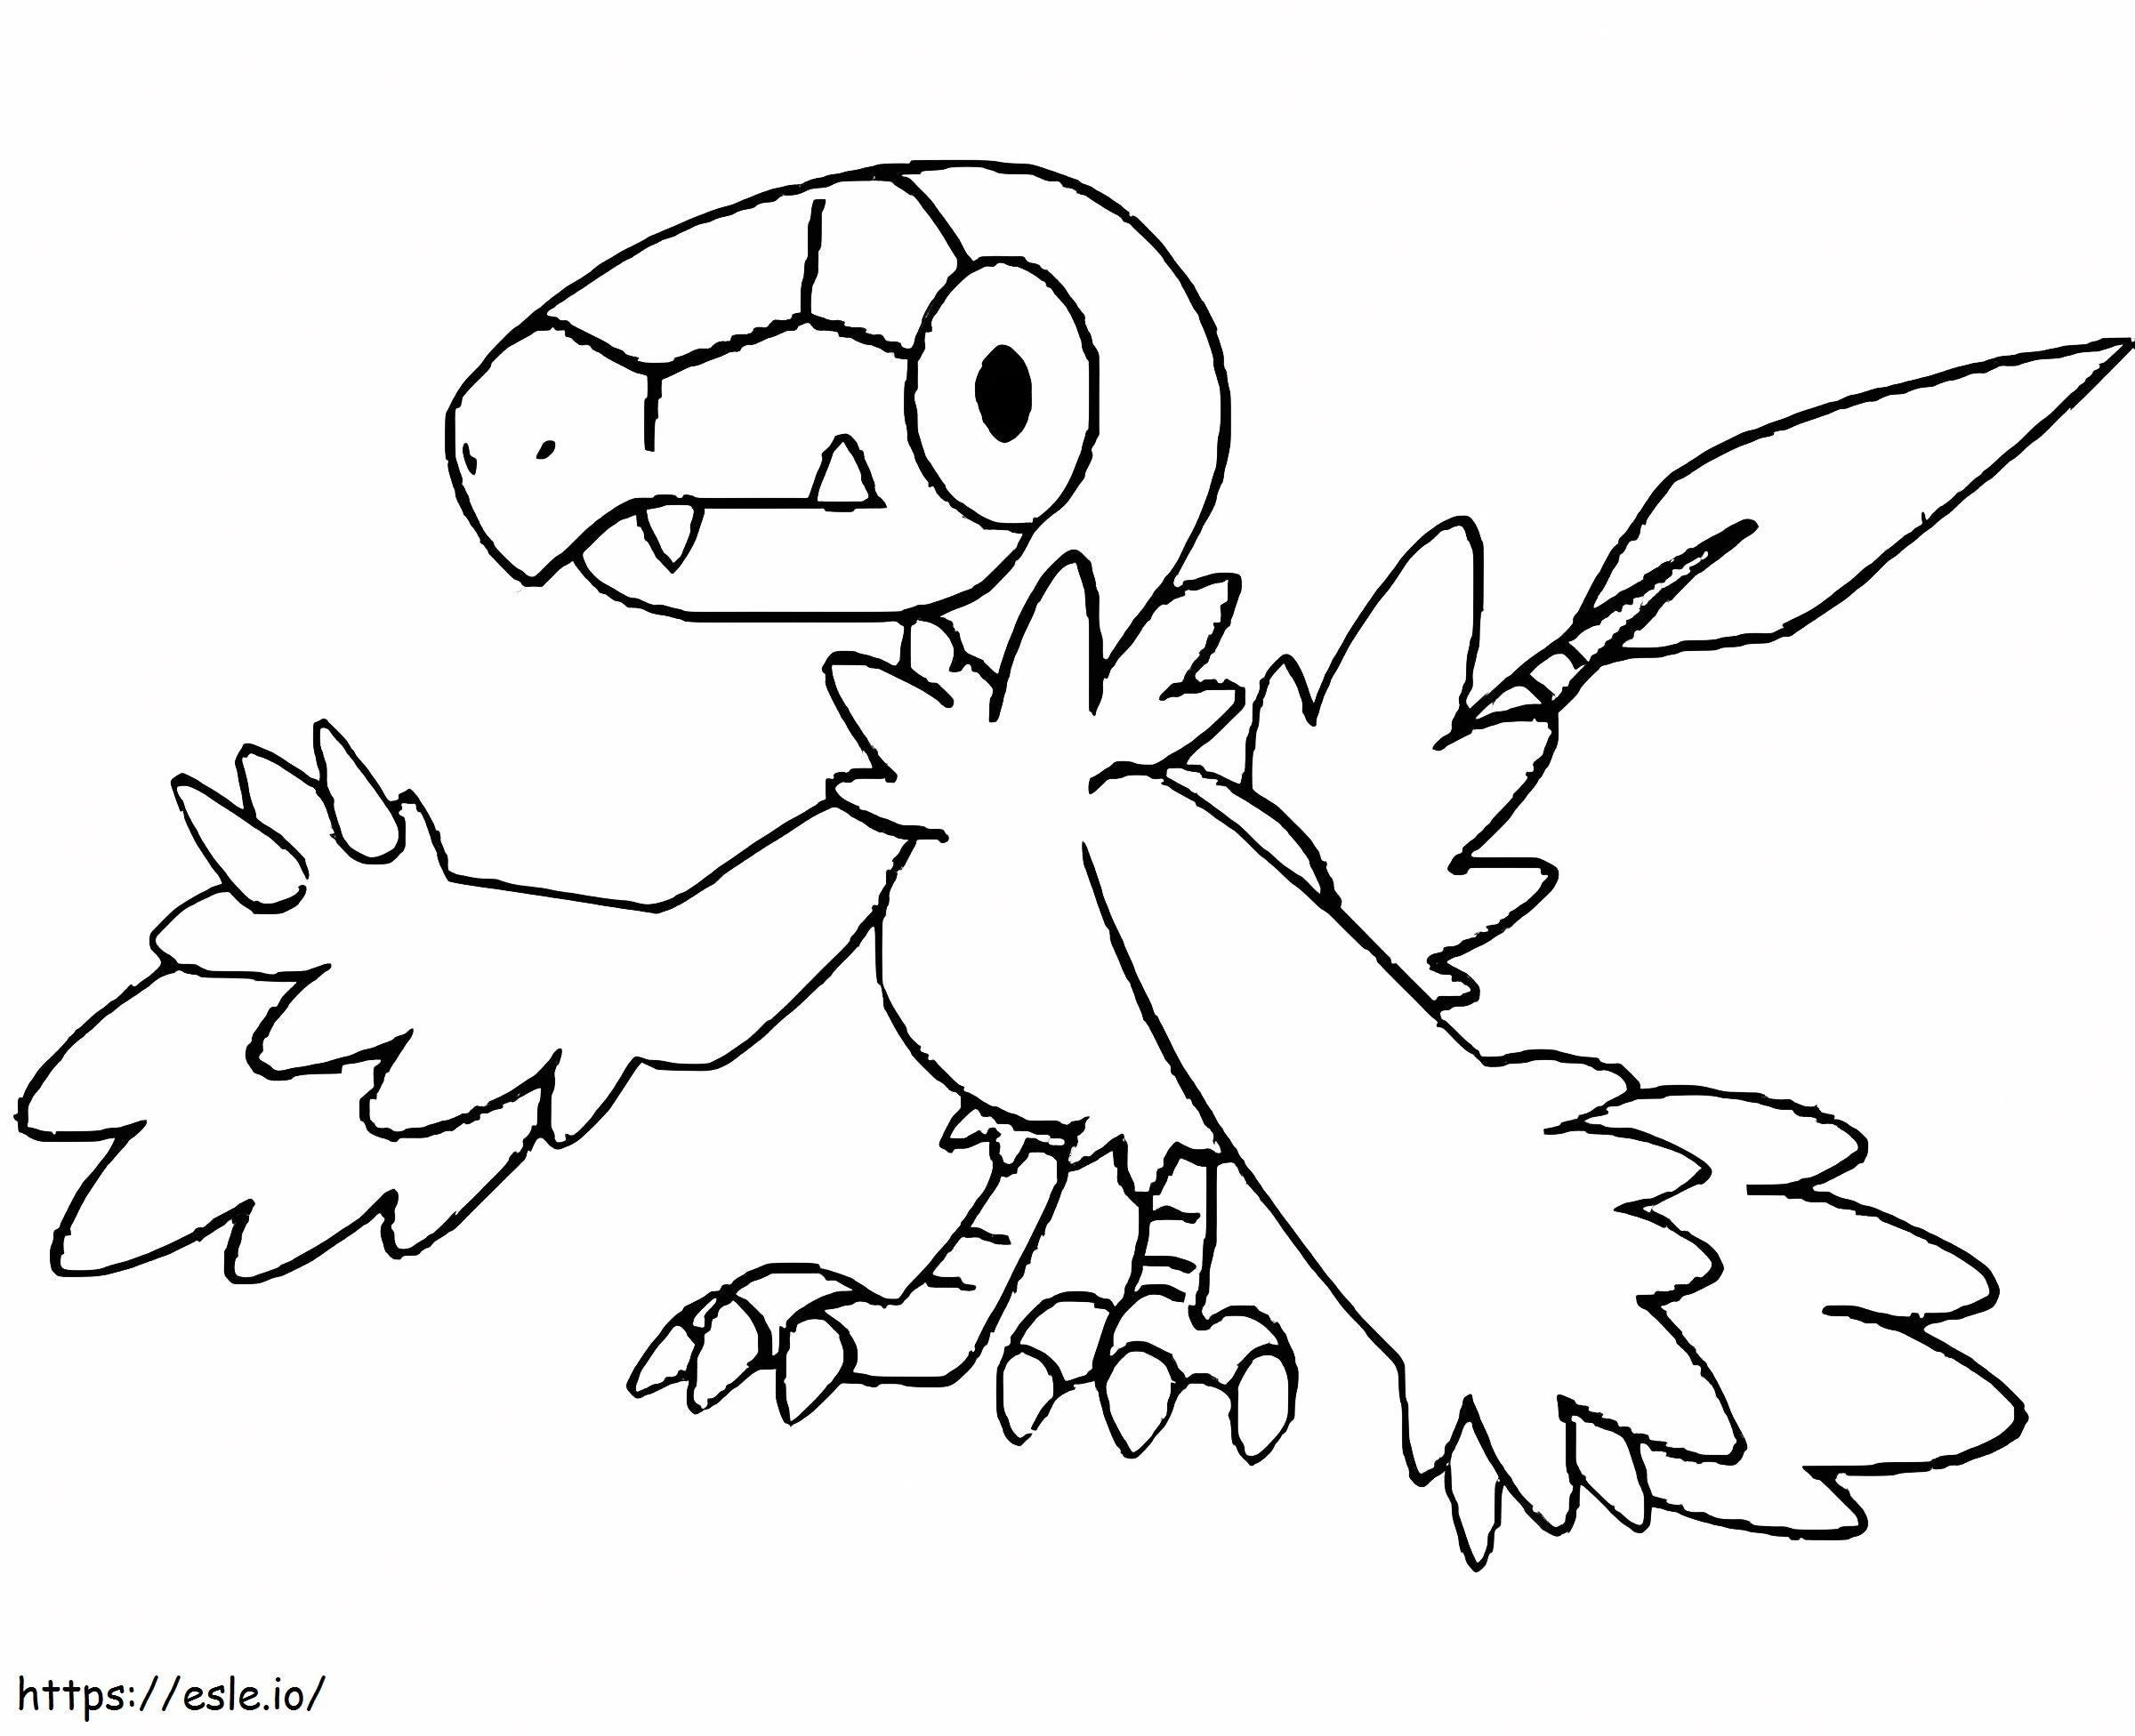 Coloriage Pokémon Archen Gen 5 à imprimer dessin